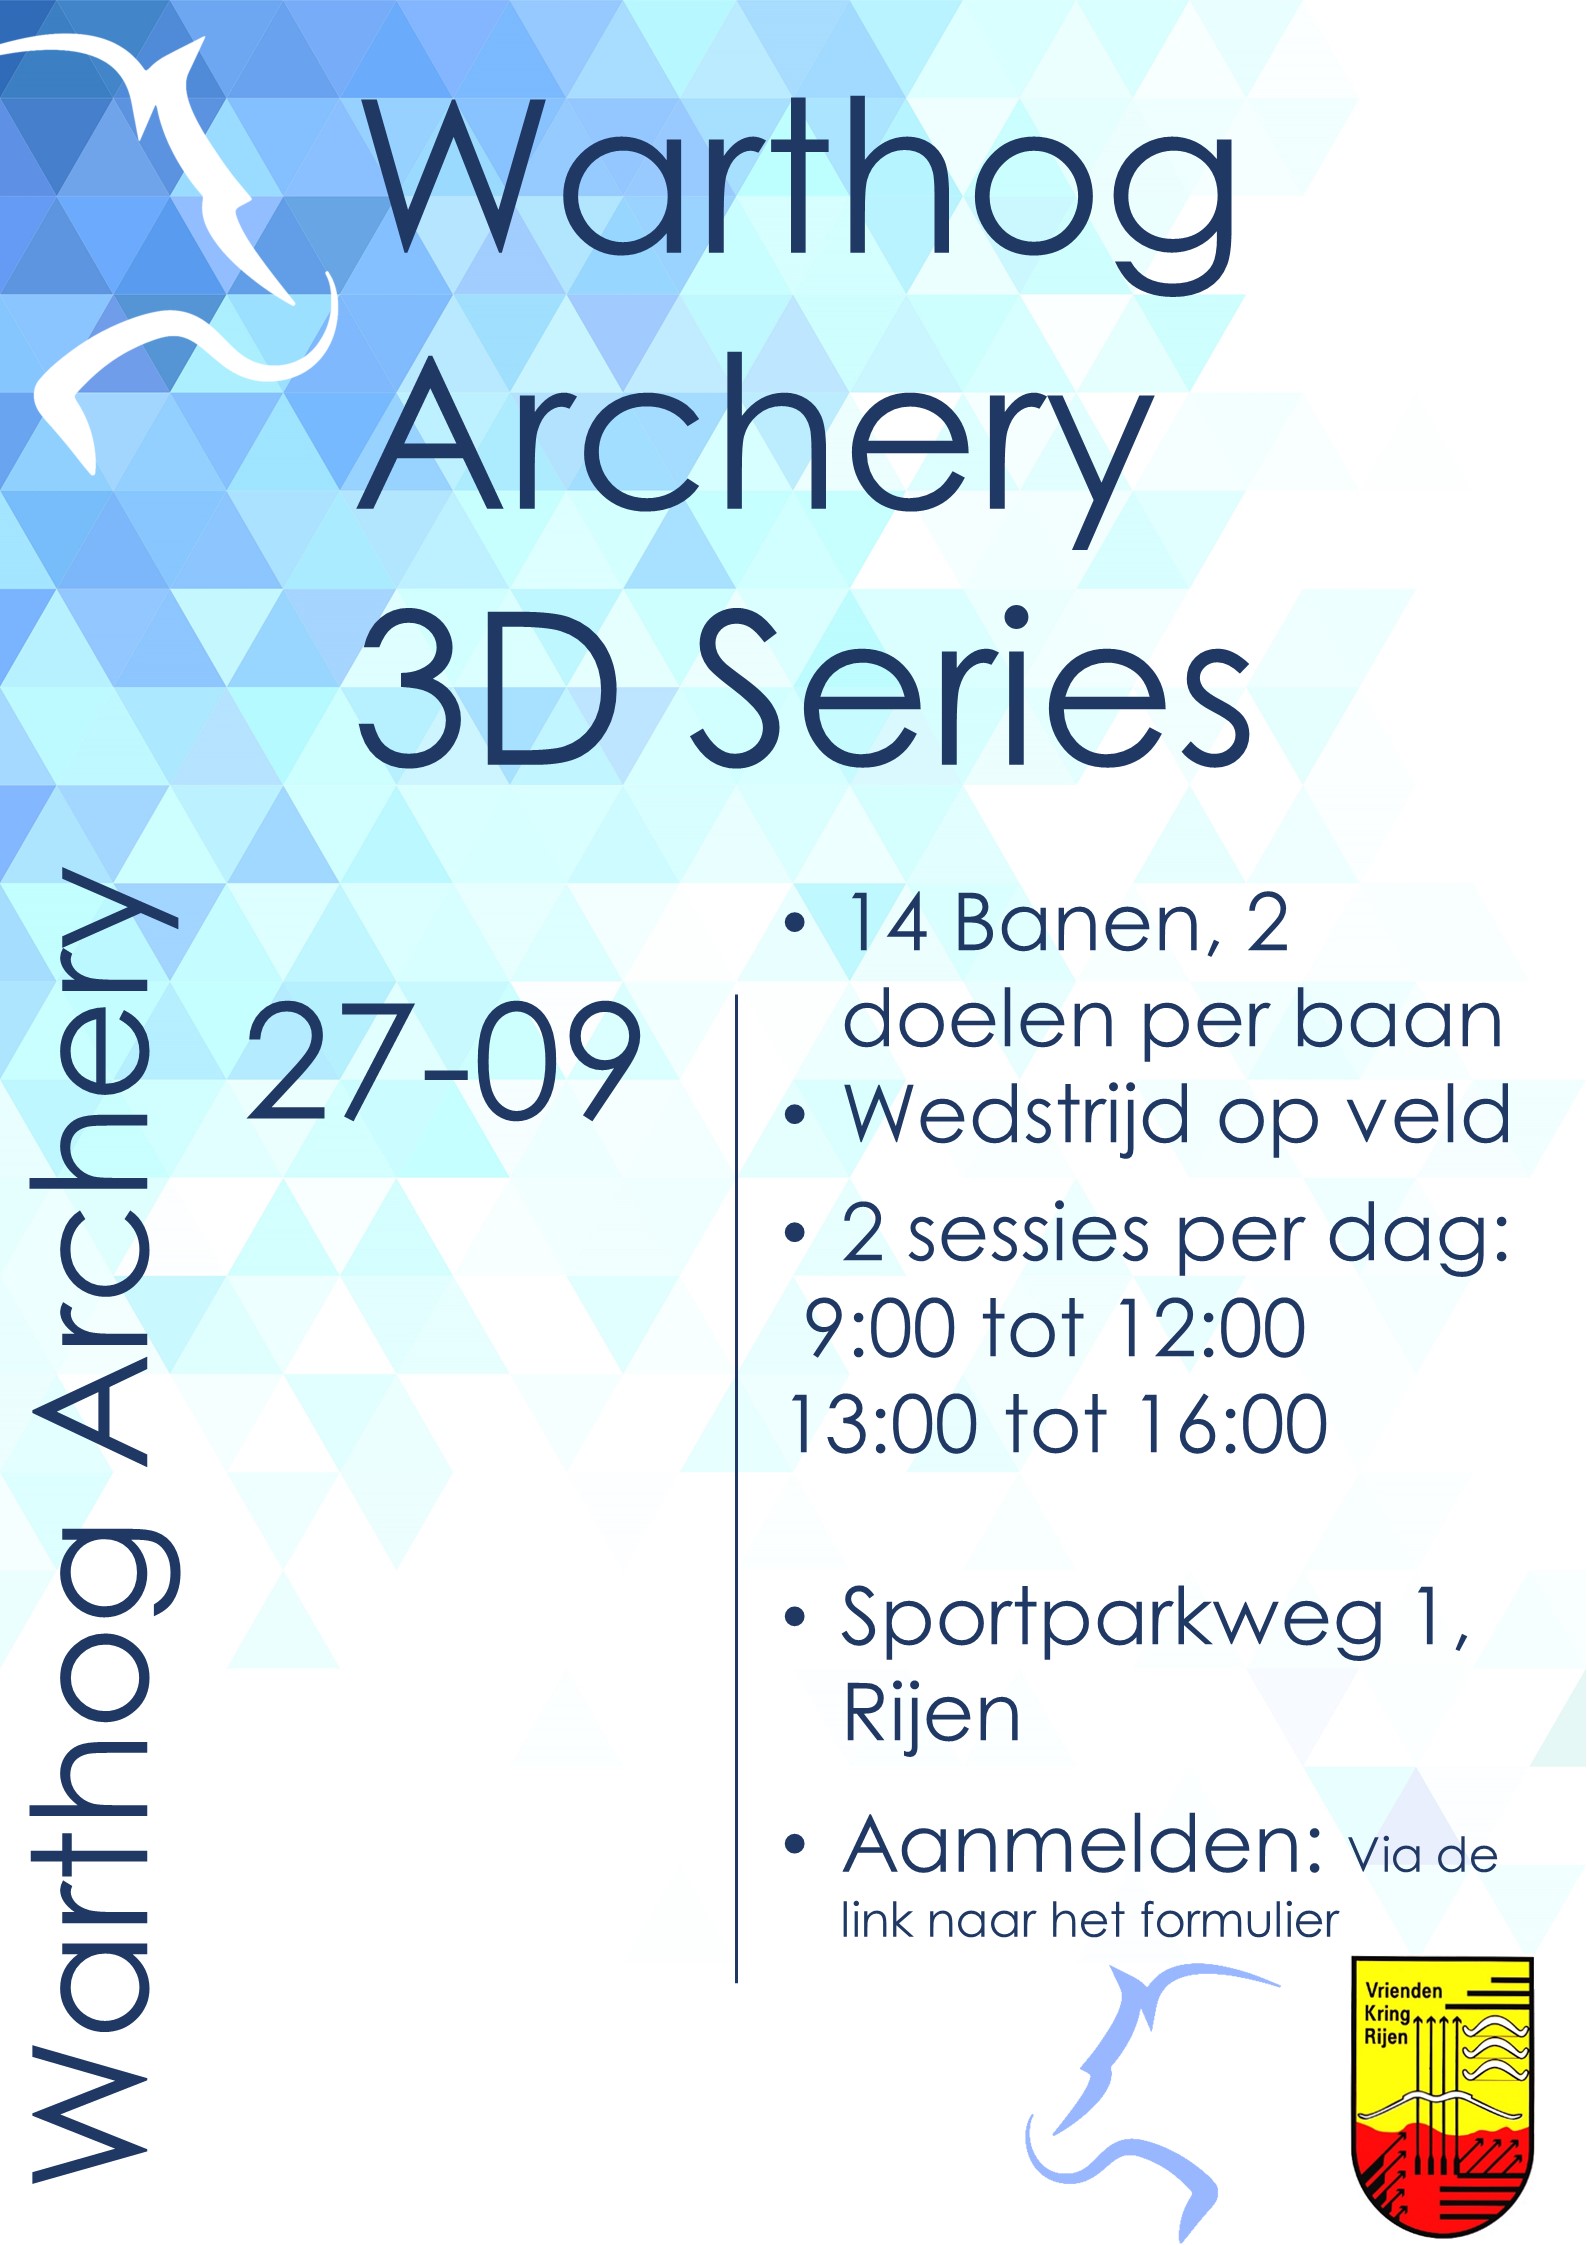 Warthog Archery Series